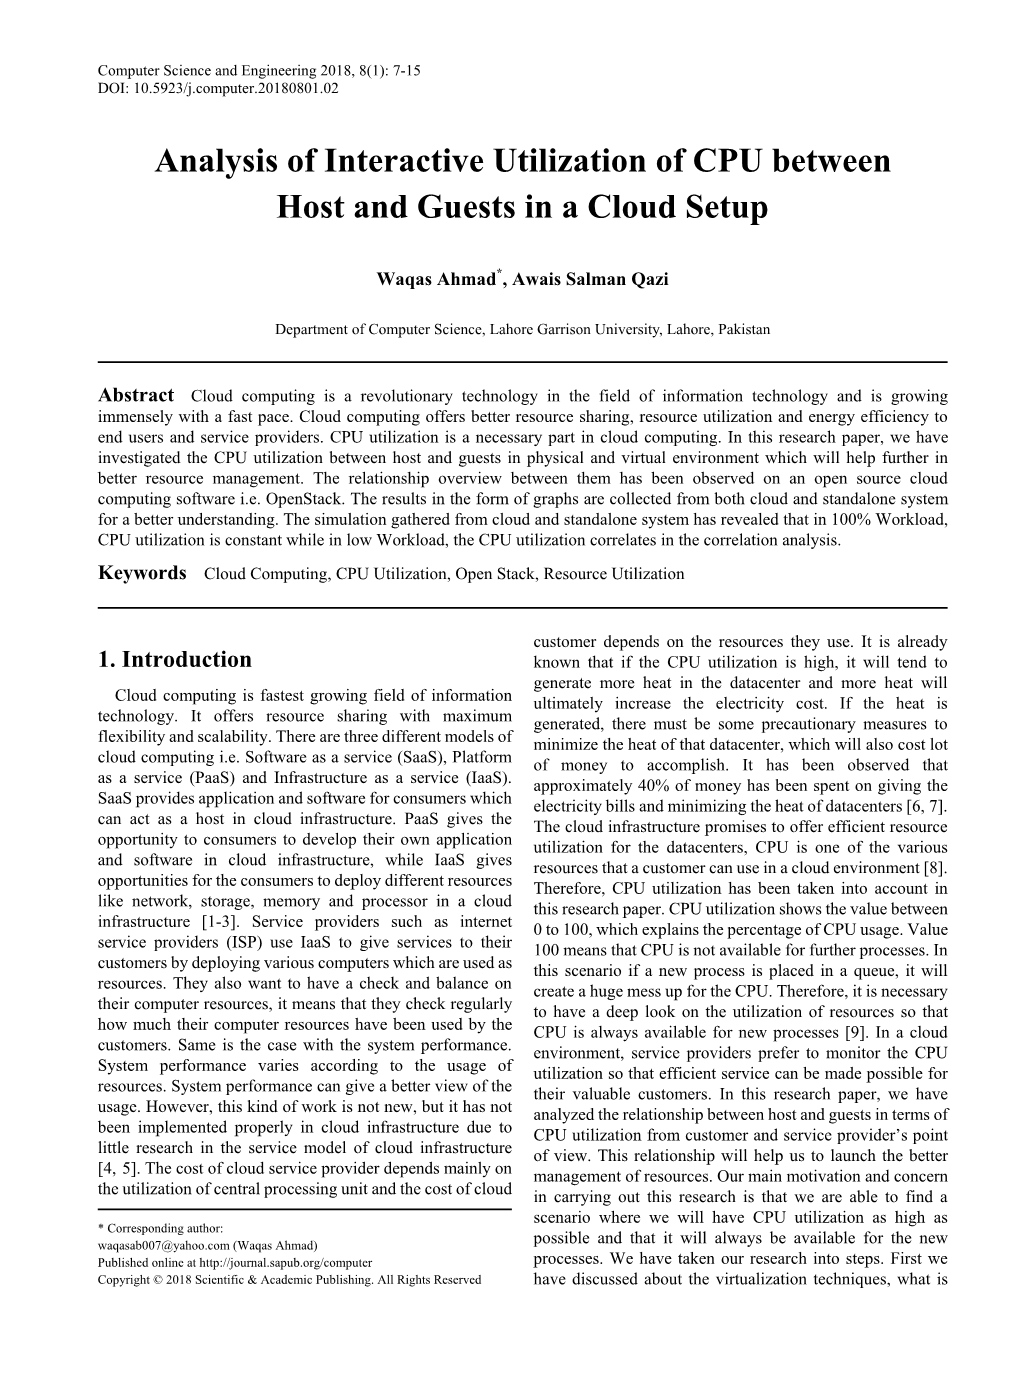 Cloud Computing, CPU Utilization, Open Stack, Resource Utilization